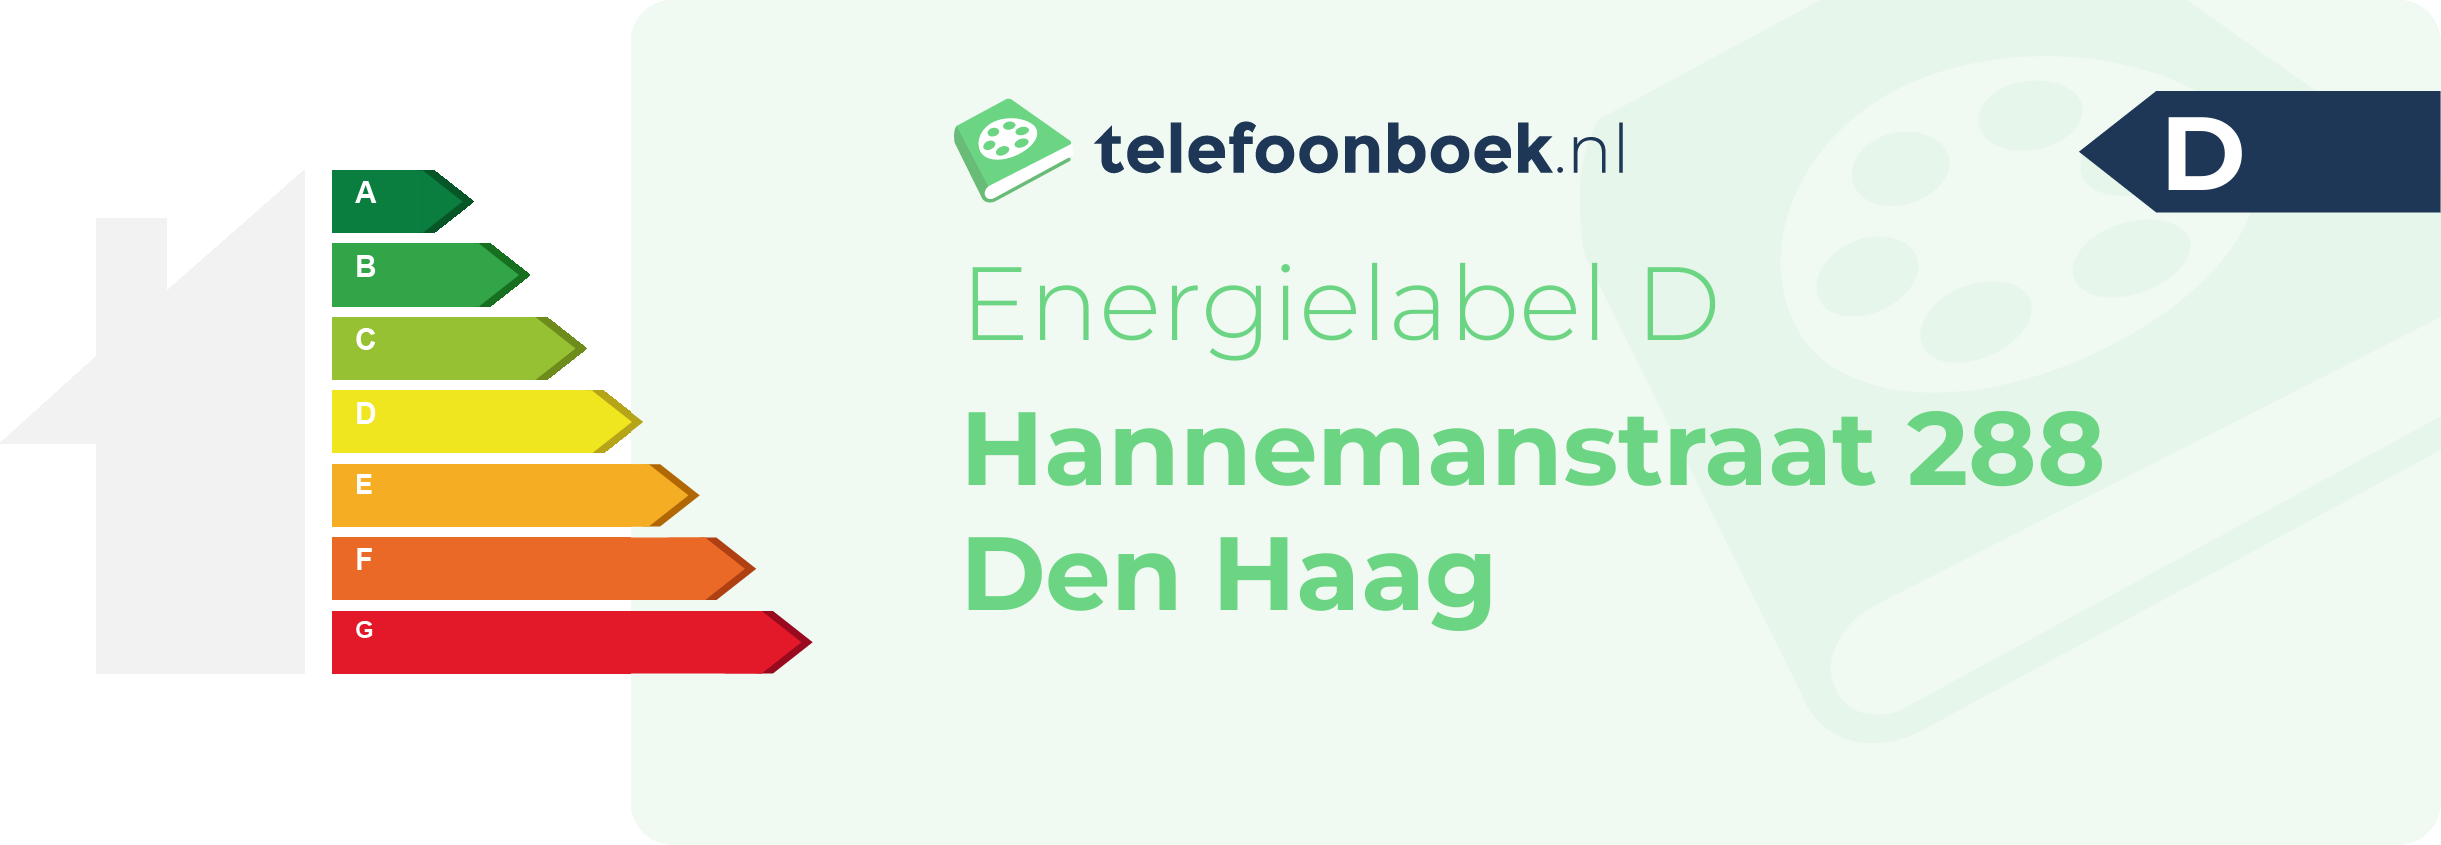 Energielabel Hannemanstraat 288 Den Haag